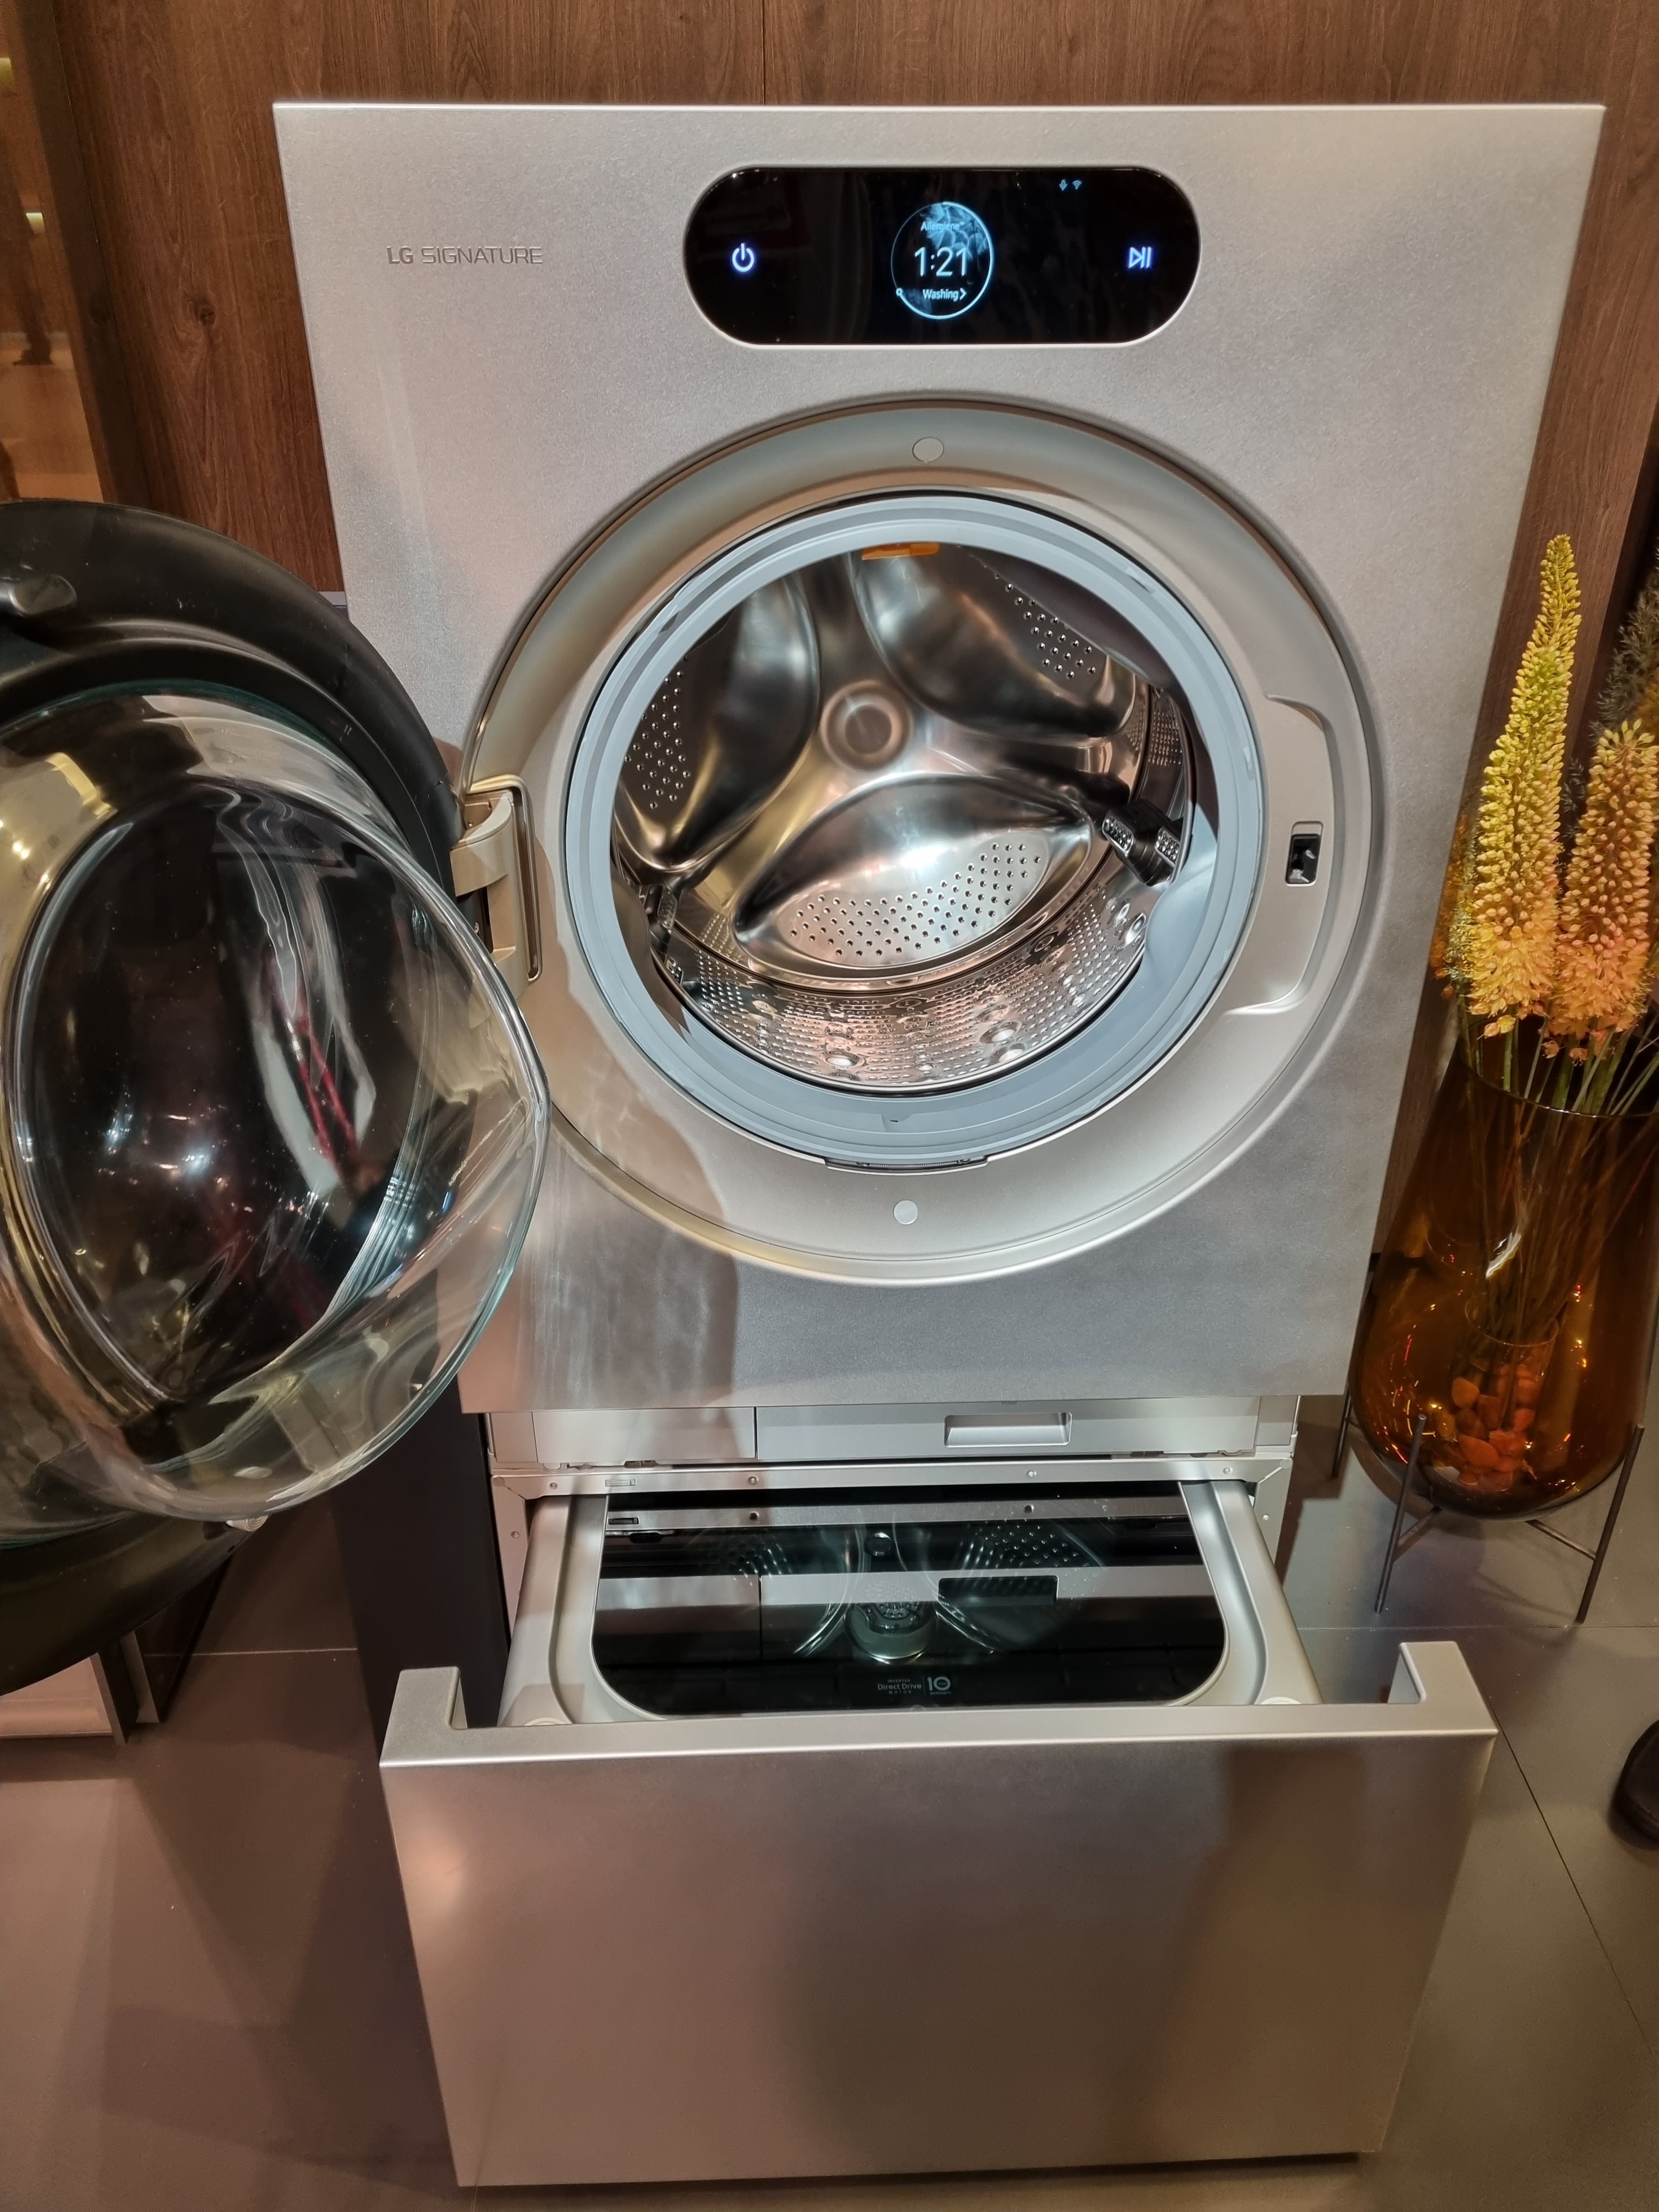 LG전자 전시장에서 처음 모습을 드러낸 2세대 세탁건조기의 모습. 아래엔 소형 통돌이 세탁기인 ‘미니워시’가 결합돼 있다. 베를린 김민석 기자